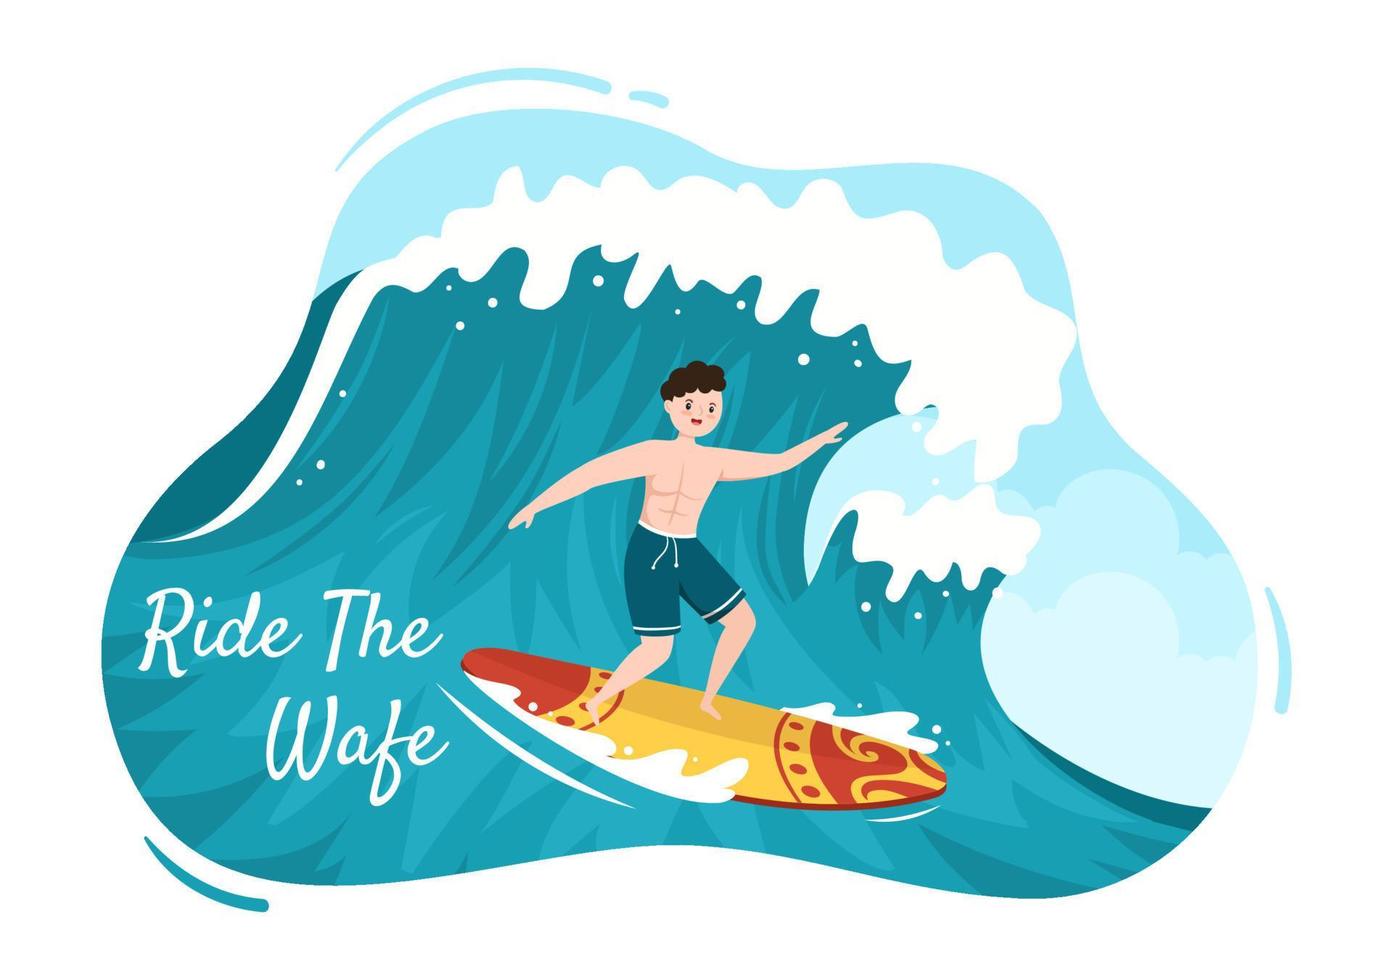 sommarsurfning av vattensportaktiviteter tecknad illustration med att åka havsvåg på surfbrädor eller flytande på paddelbräda i platt stil vektor